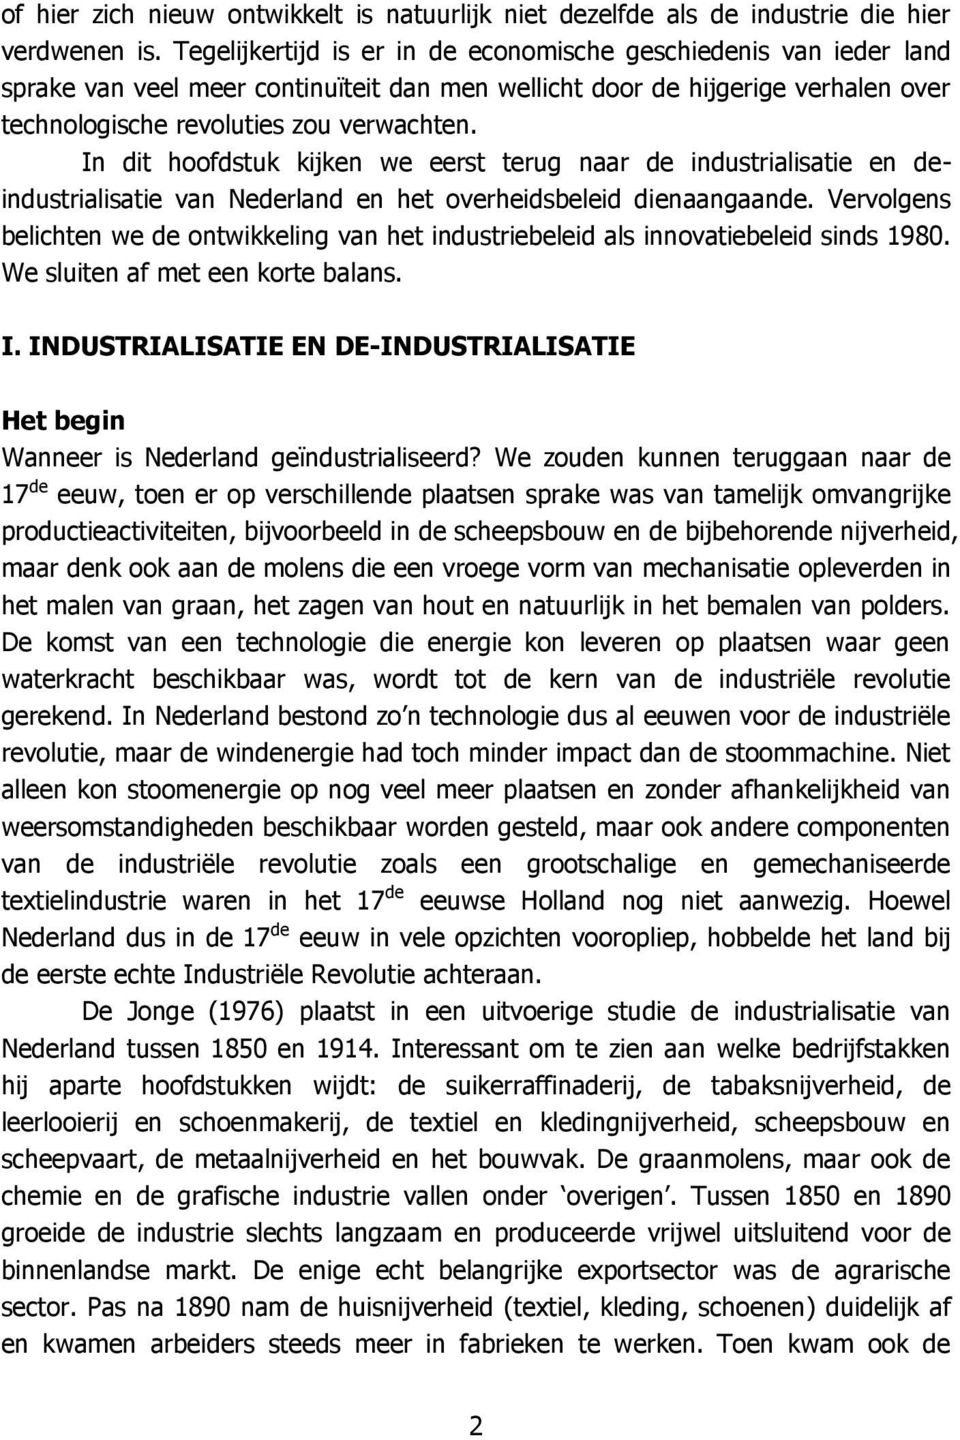 In dit hoofdstuk kijken we eerst terug naar de industrialisatie en deindustrialisatie van Nederland en het overheidsbeleid dienaangaande.